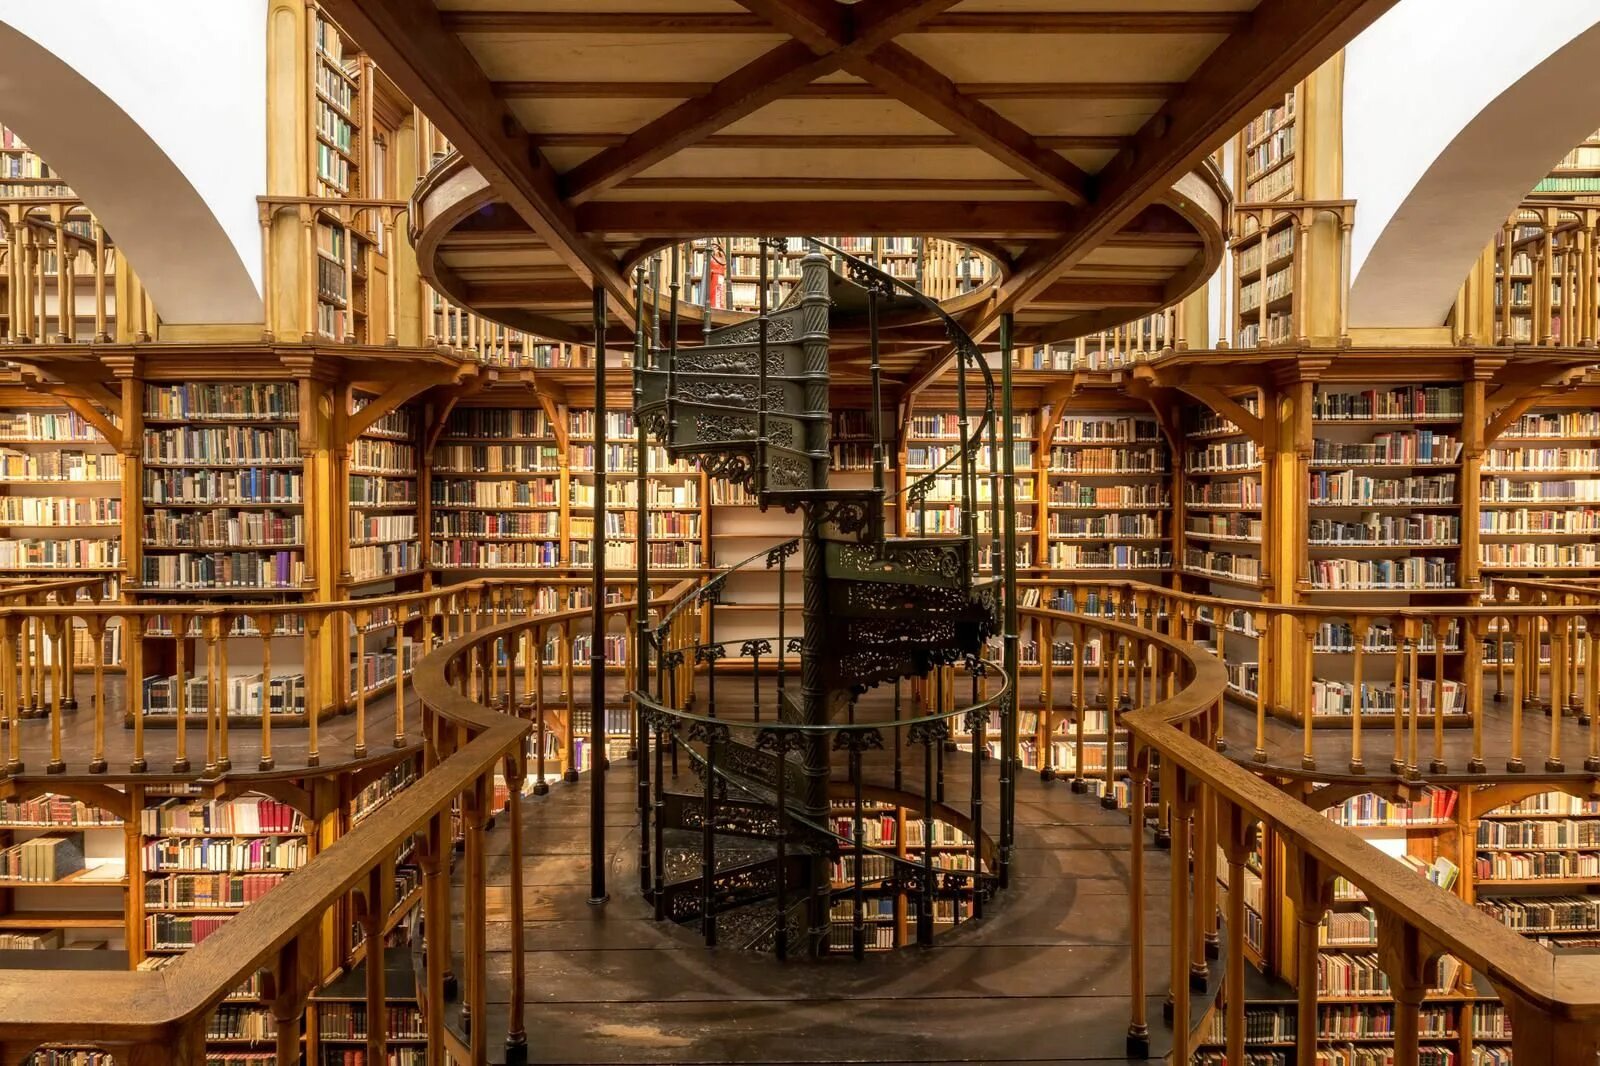 Effects library. Библиотека науки, Герлиц, Германия. Maria Laach Abbey Library. Библиотека Джироламини Италия.